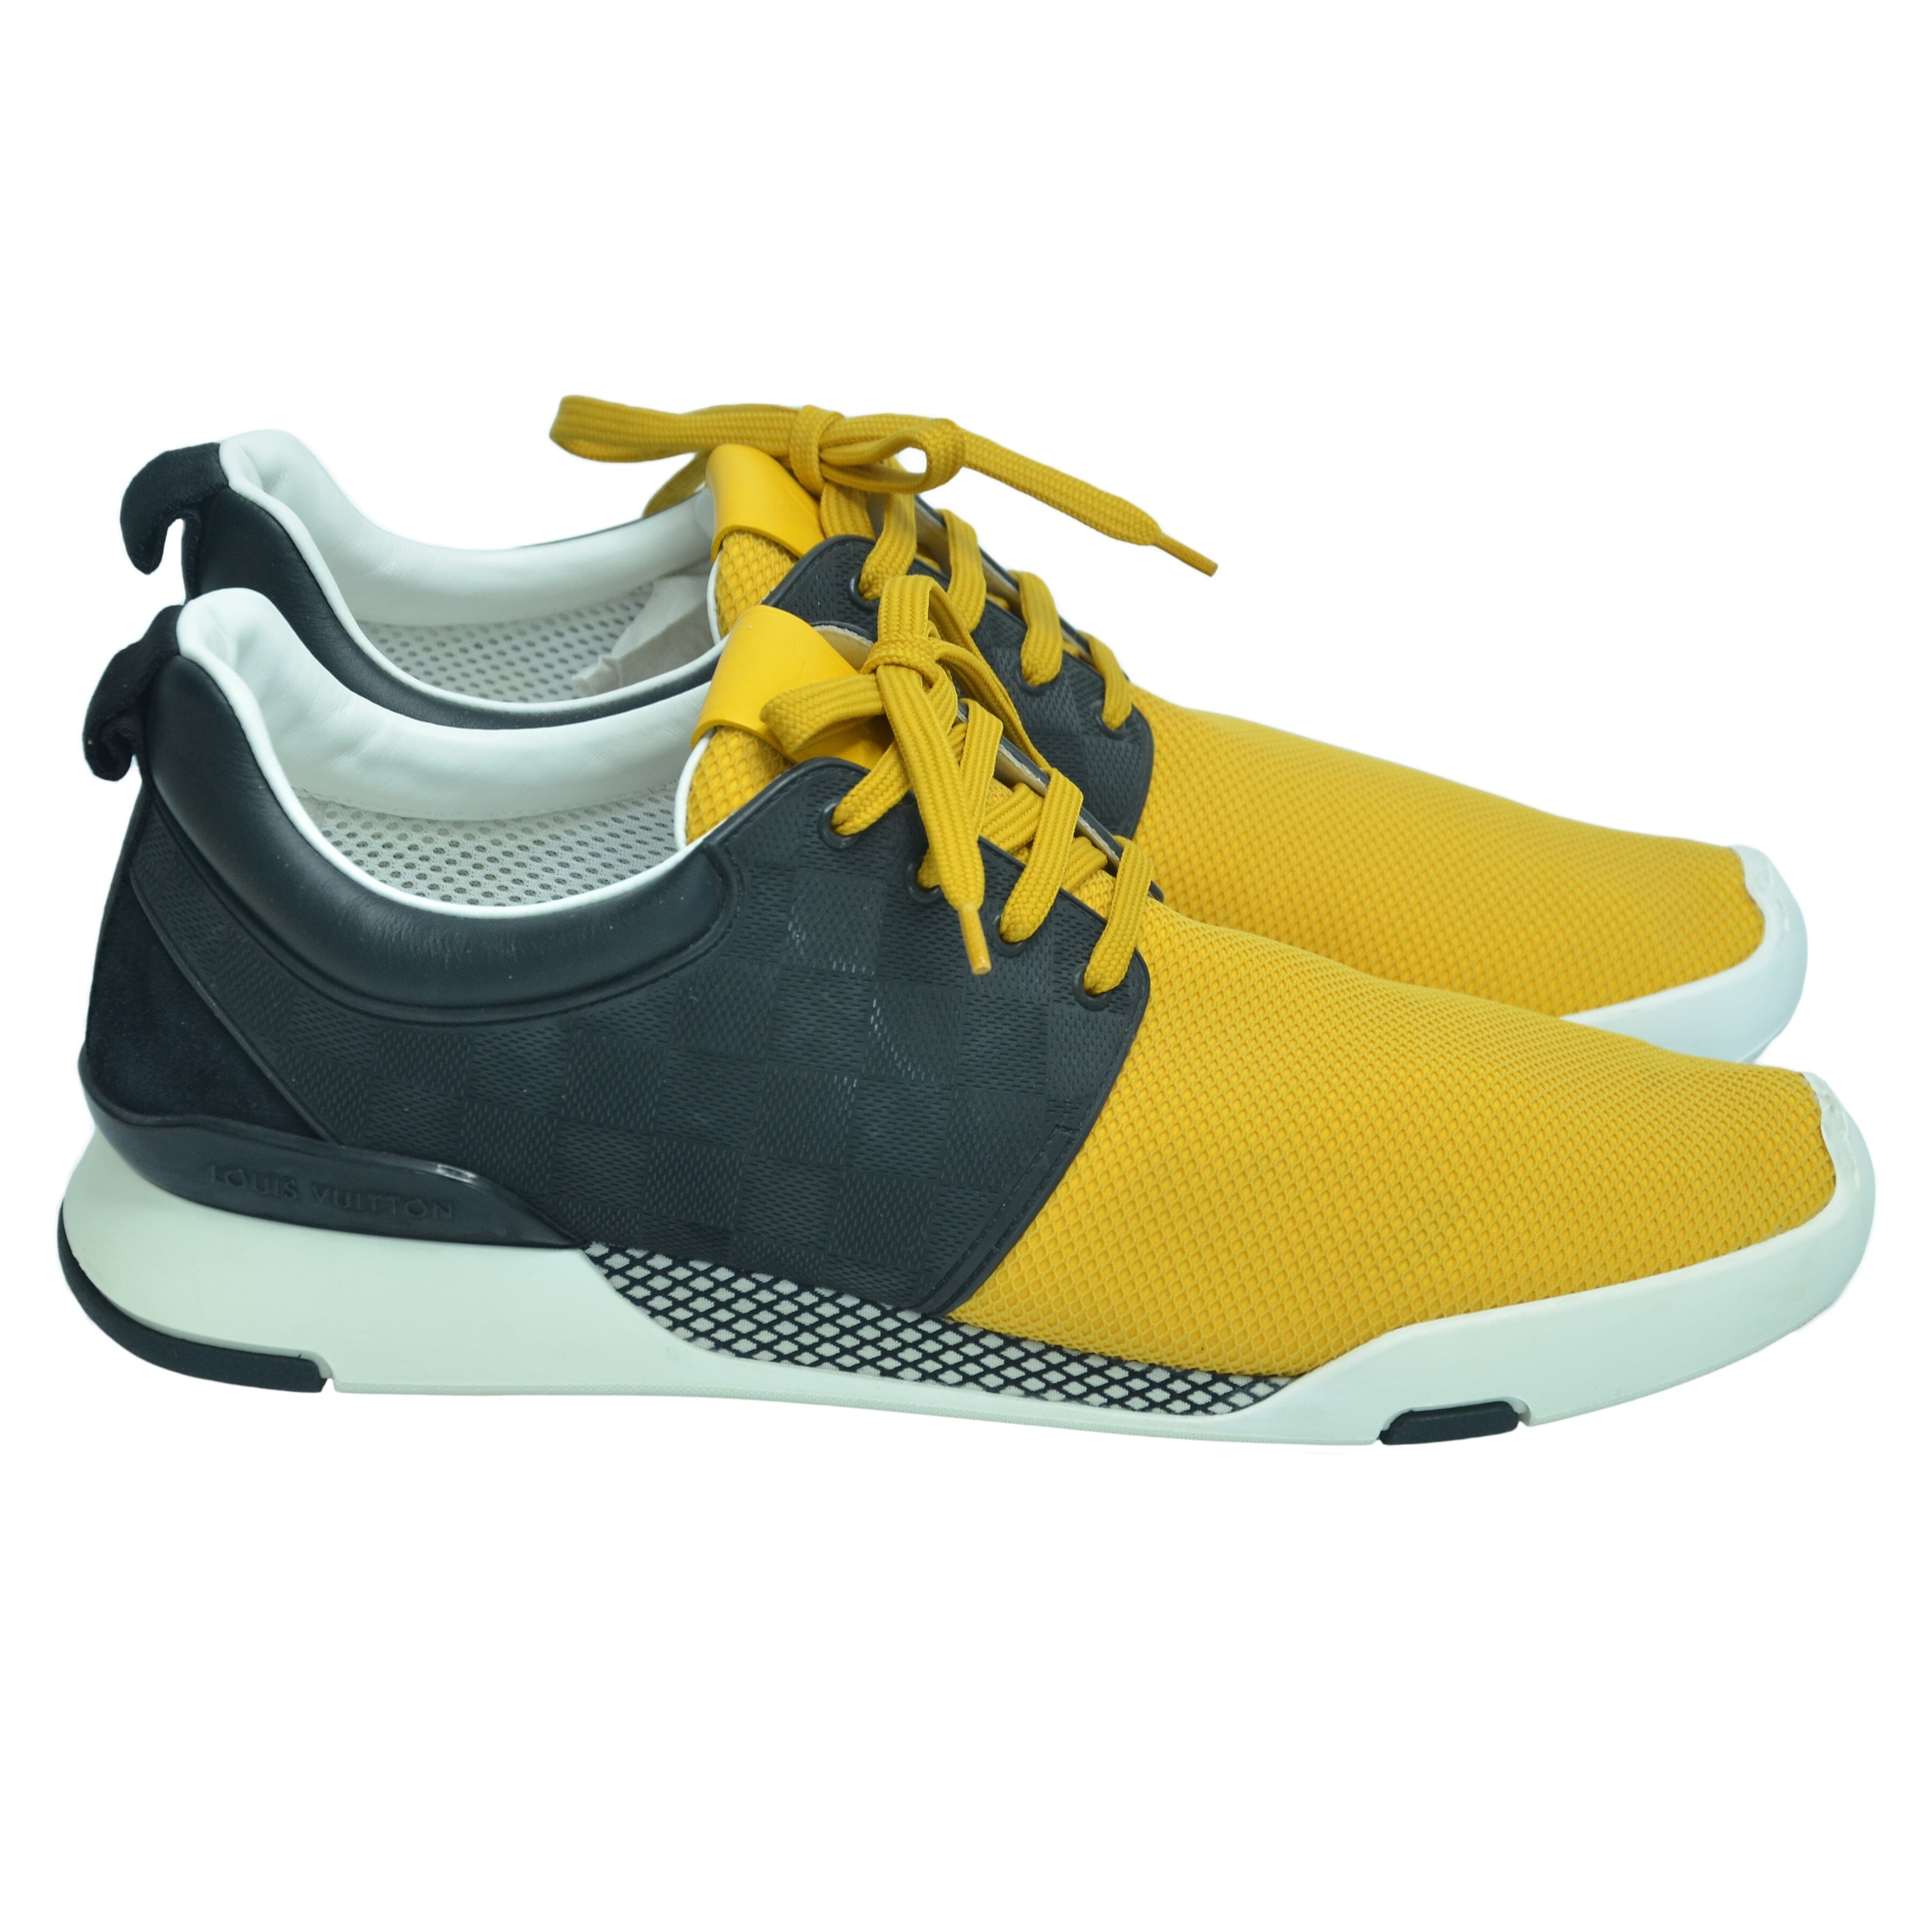 Yellow/Black Damier Fastlane Sneaker Shoes Louis Vuitton